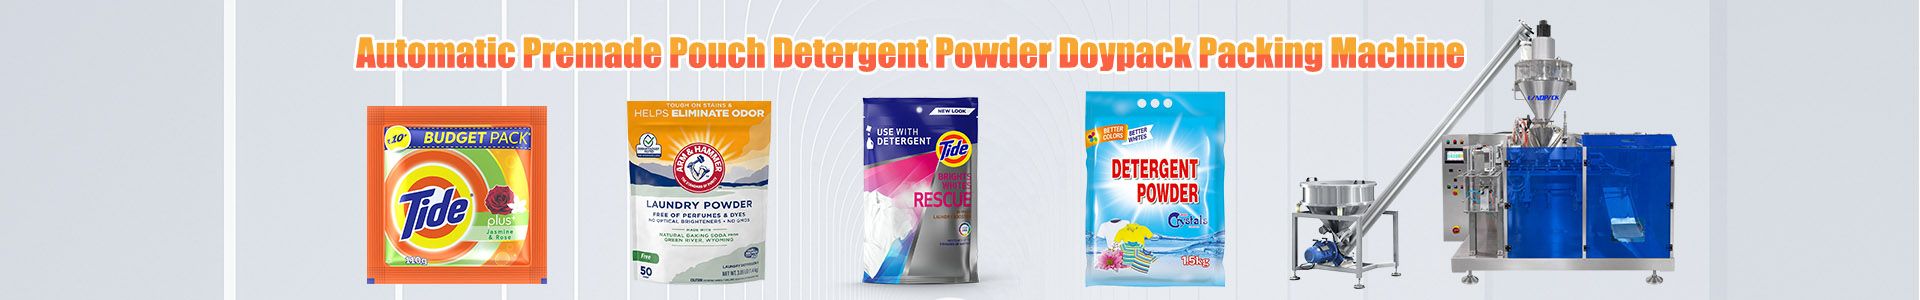 Envasadora de detergente en polvo